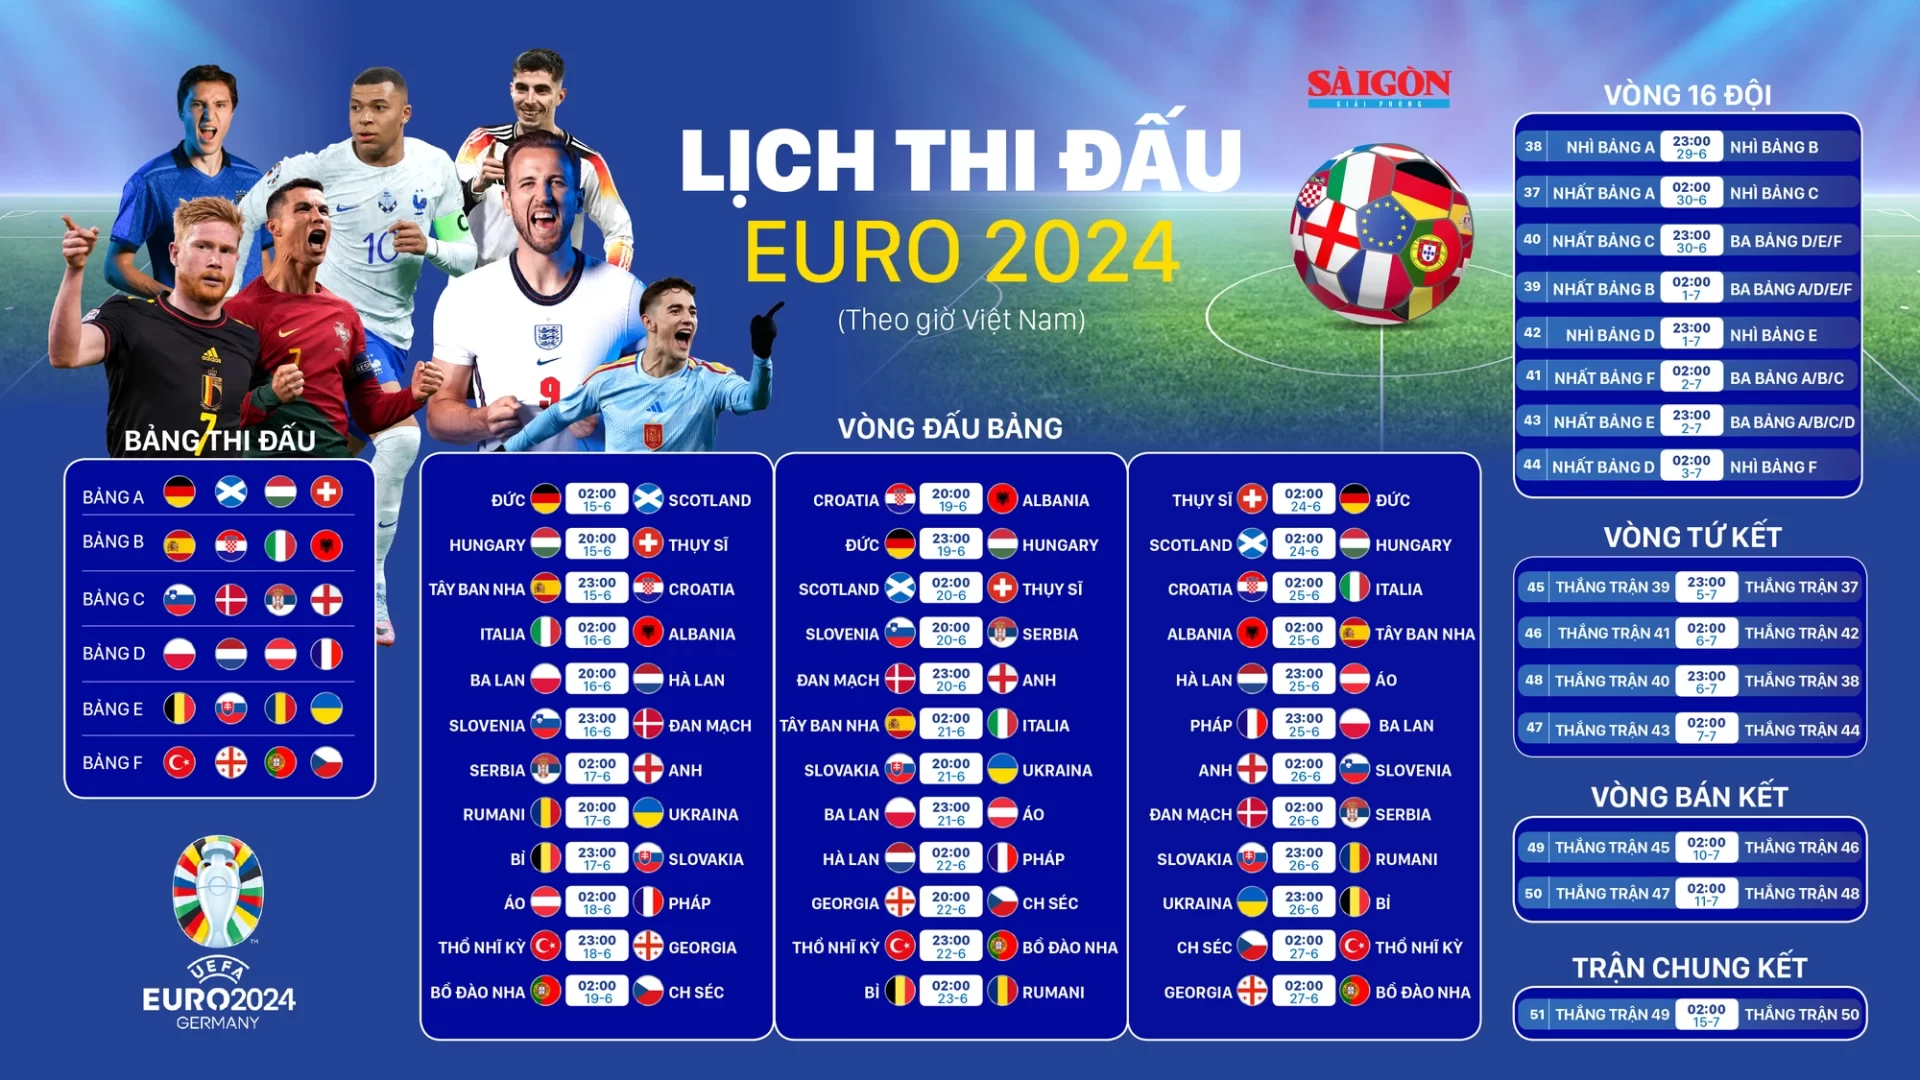 lich-thi-dau-euro-2024